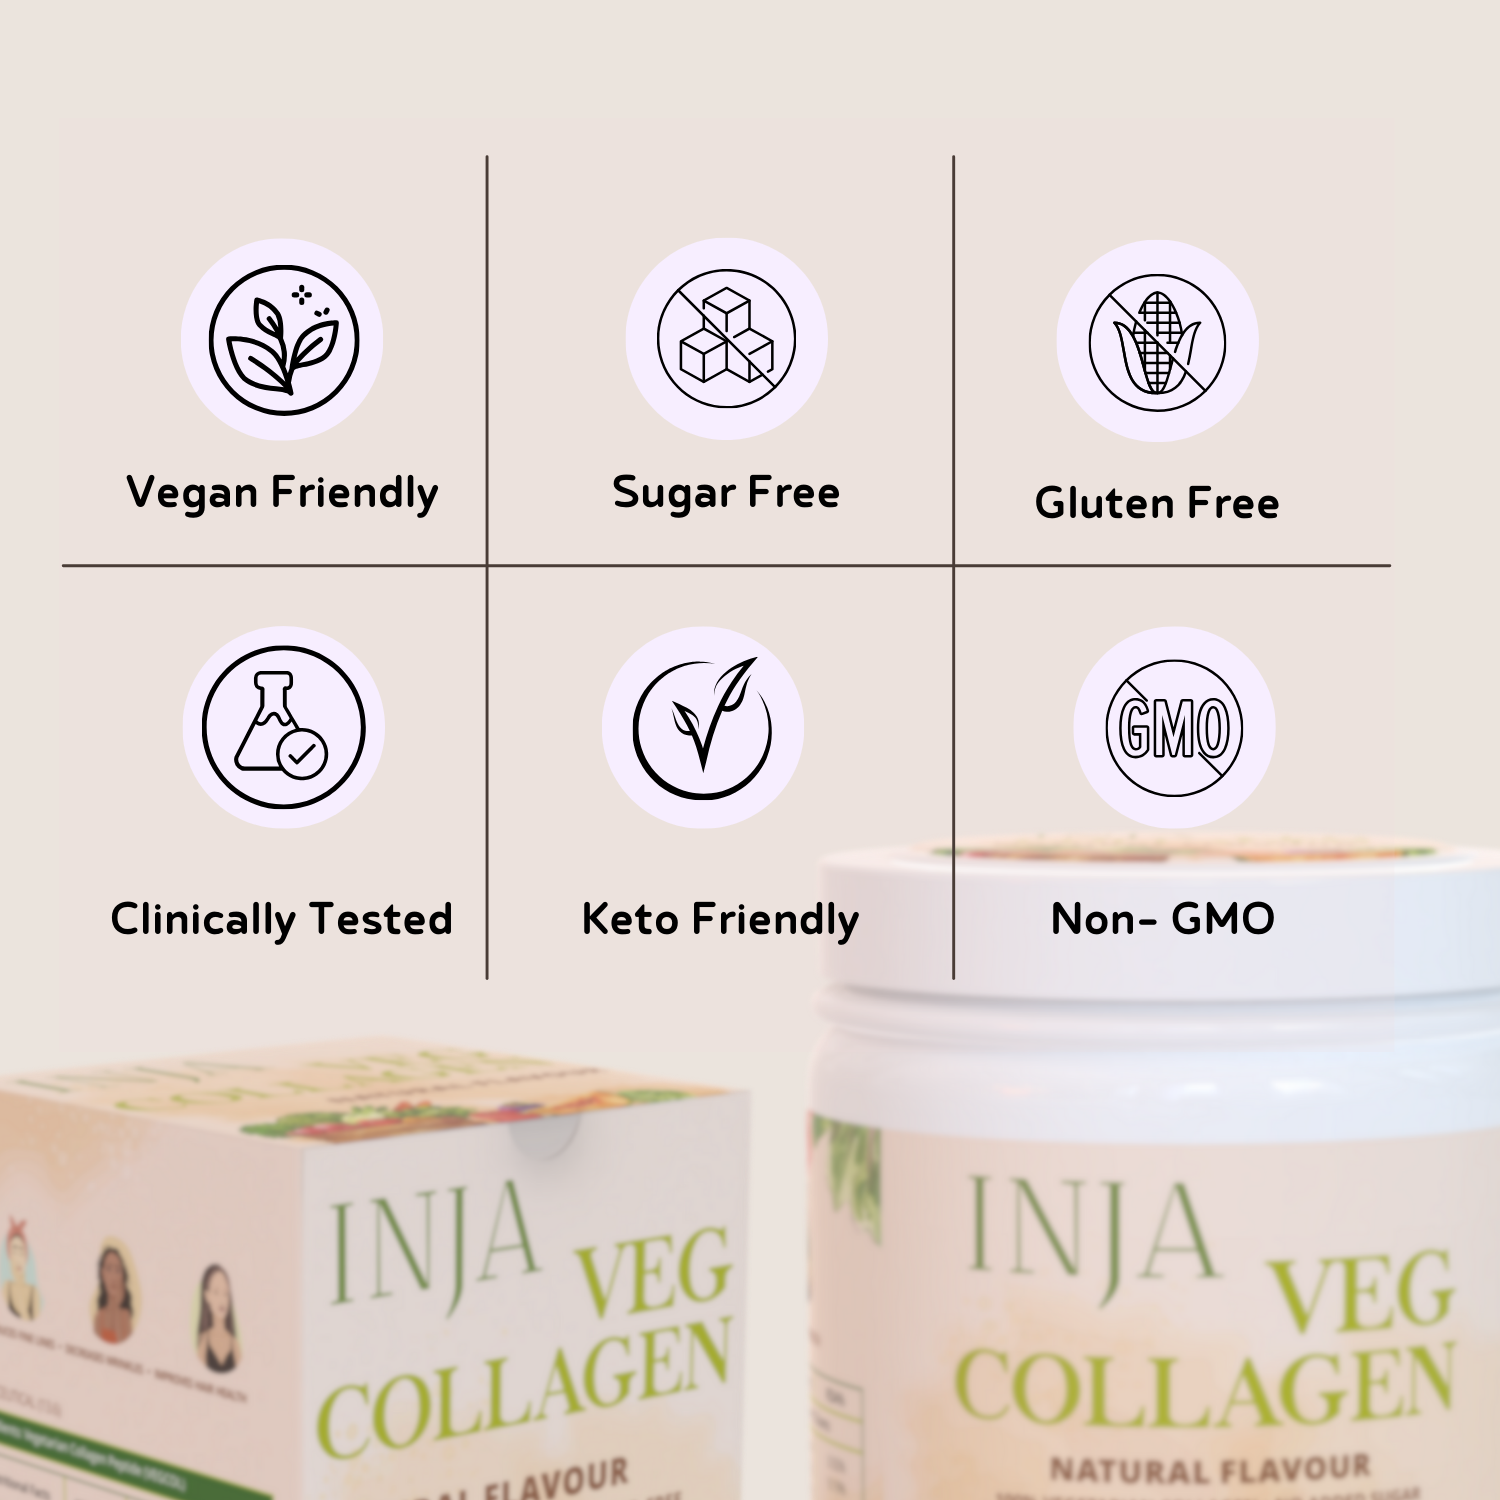 INJA Veg Collagen - Clinikally